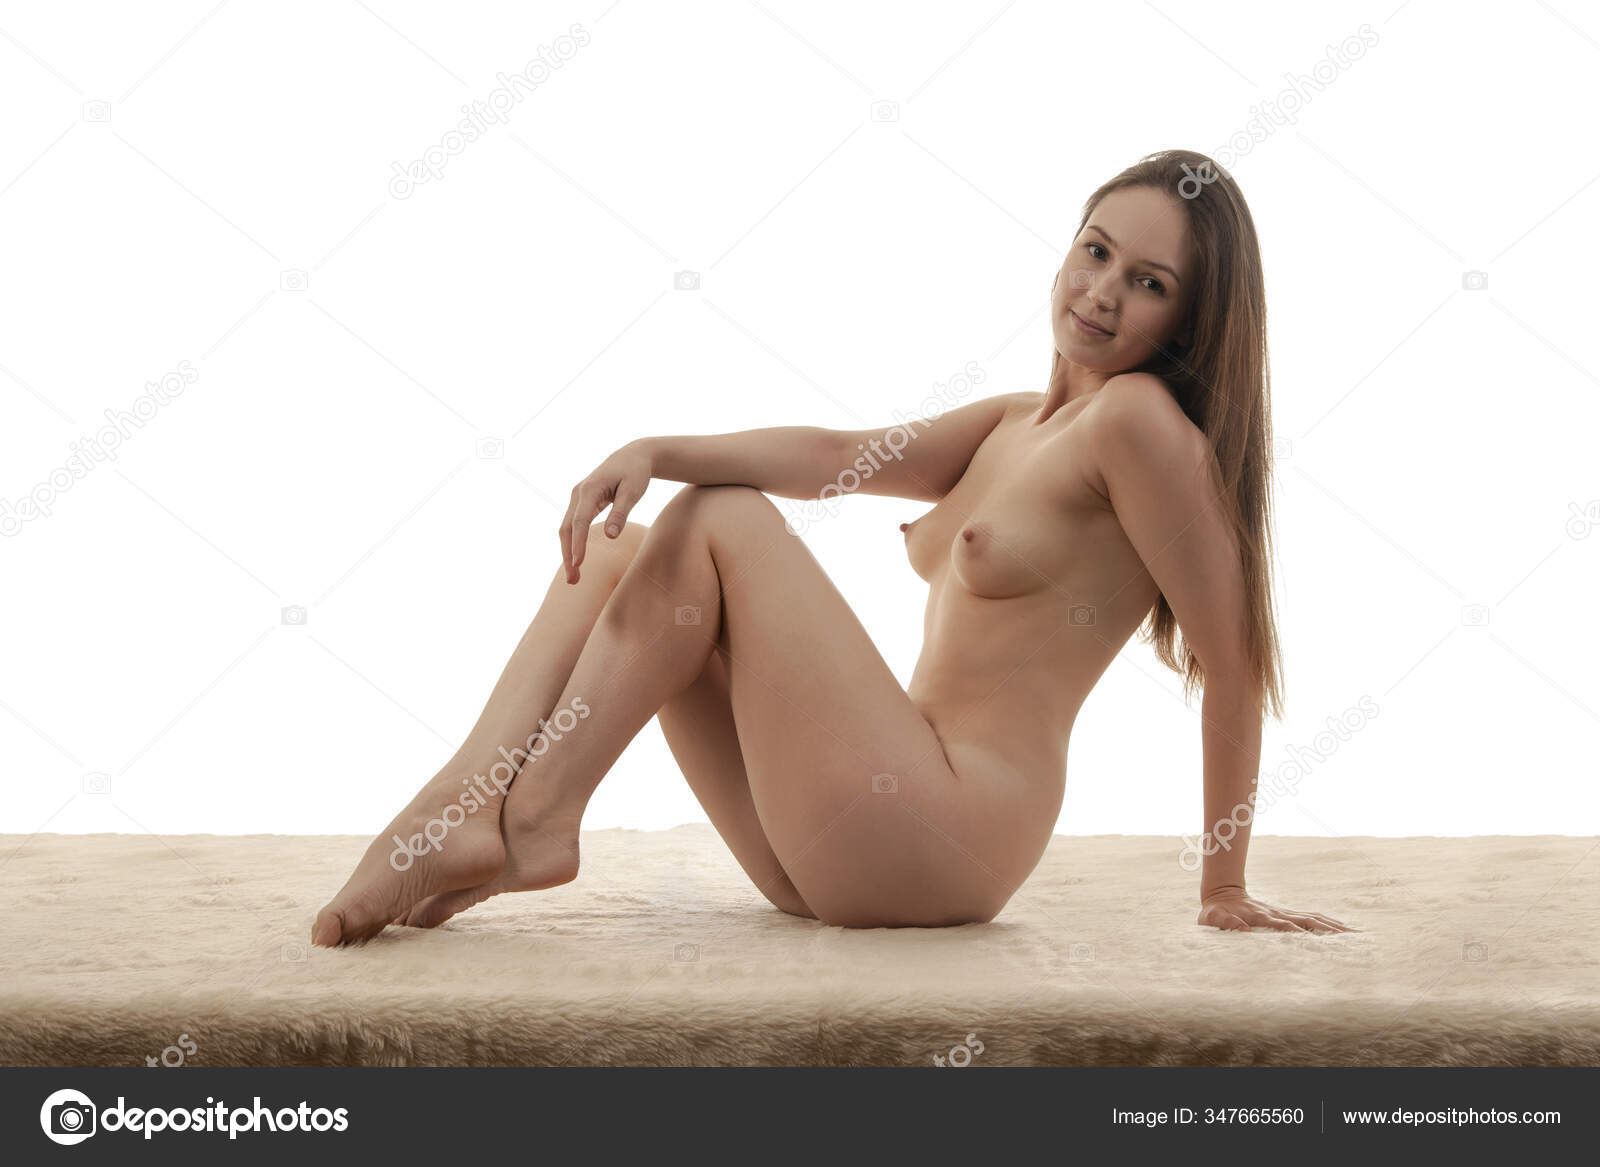 https://st3n.depositphotos.com/2970081/34766/i/1600/depositphotos_347665560-stock-photo-young-sexy-girl-nude-beautiful.jpg